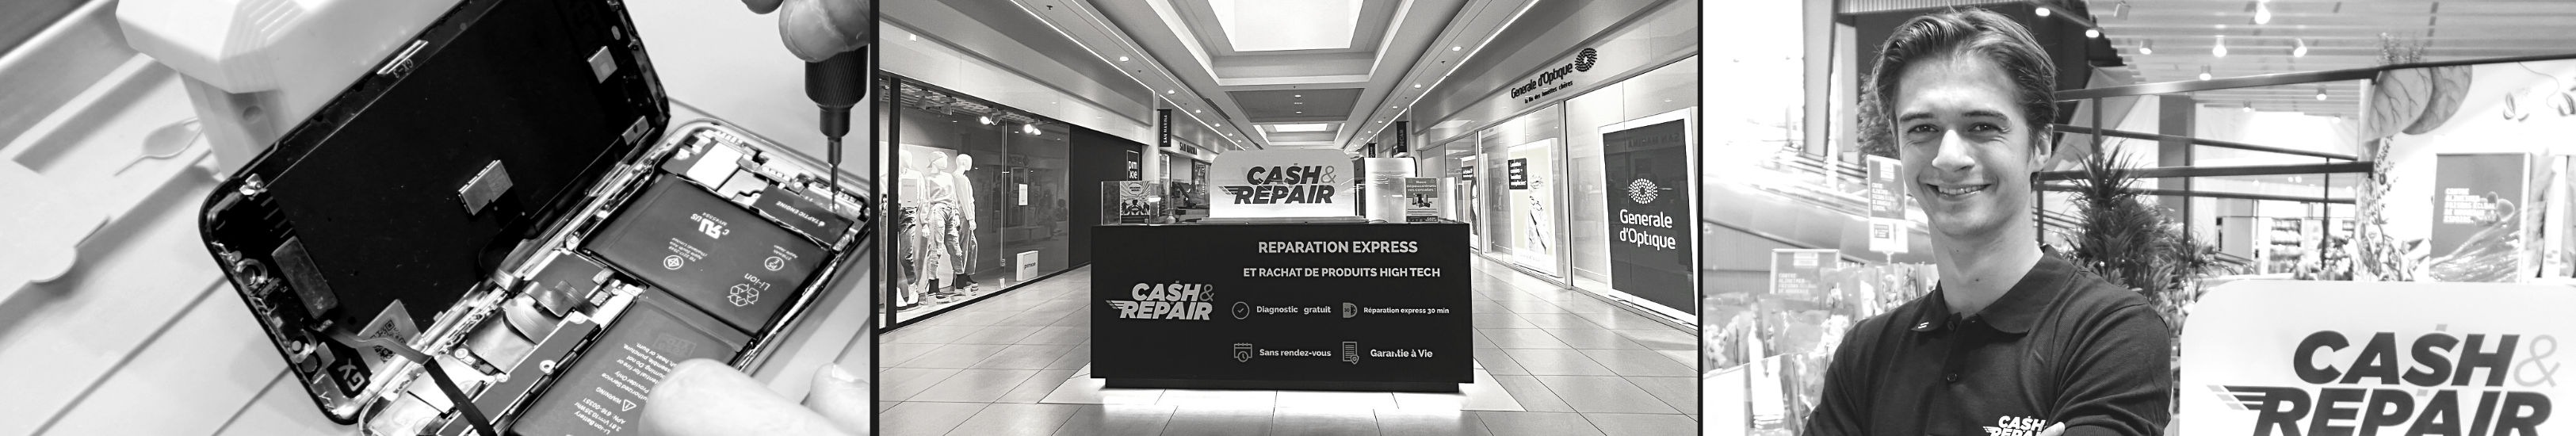 - Atelier de réparation Cash and Repair Saint-Grégoire - Rennes